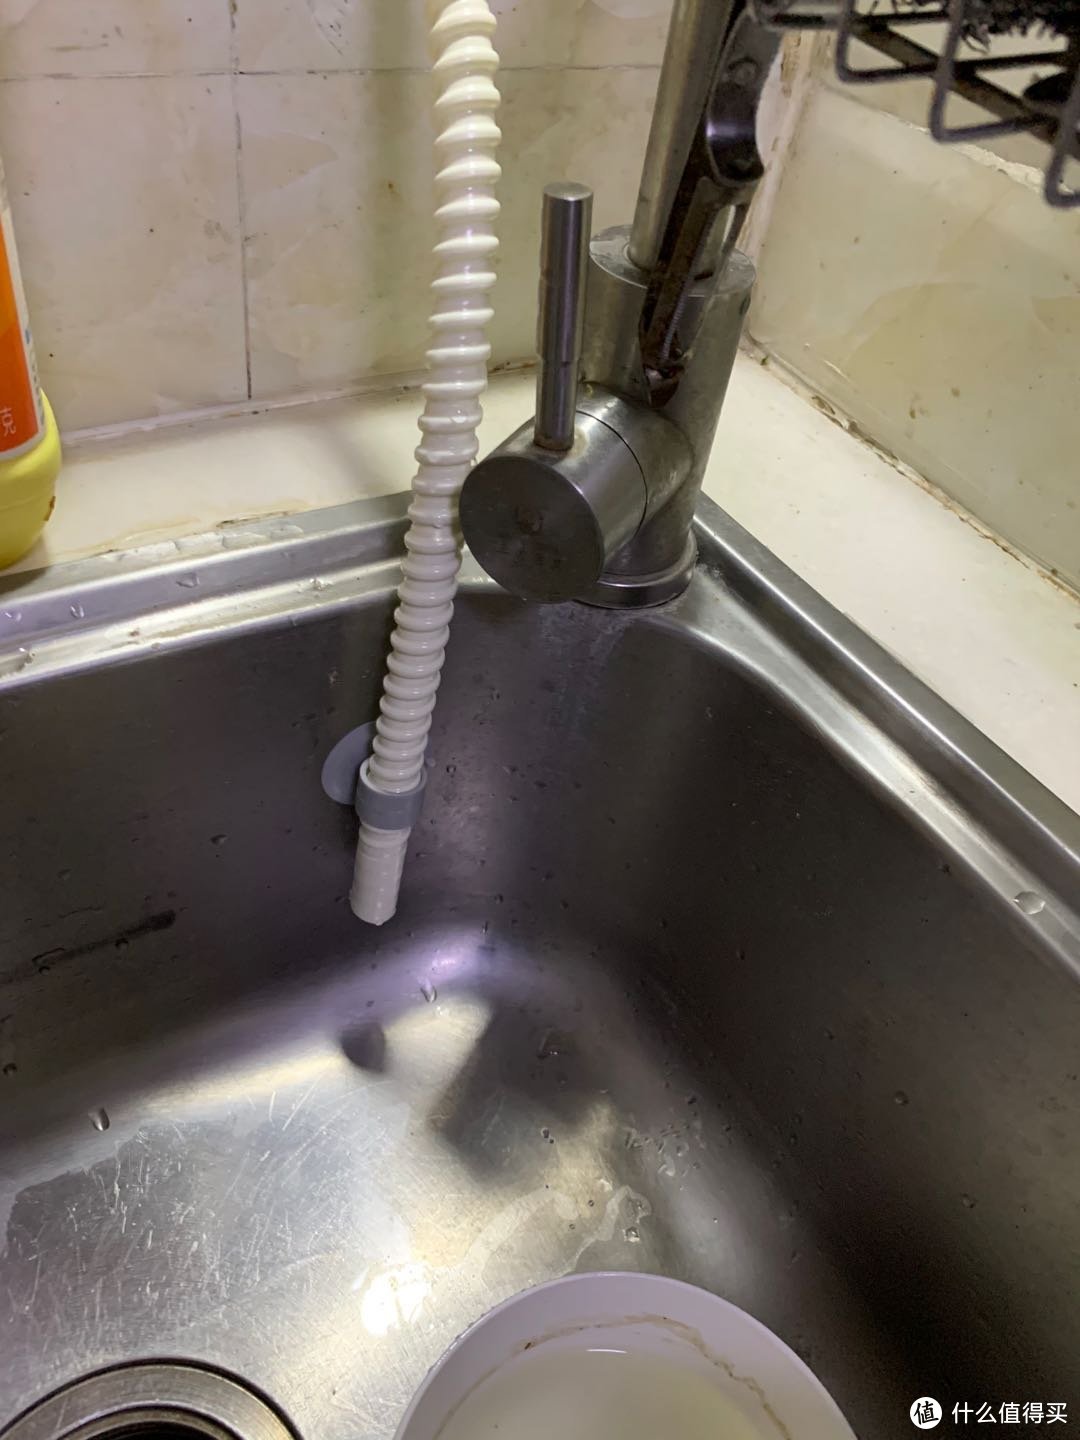 从小厨房的角度展现松下台上洗碗机的安装到底难不难